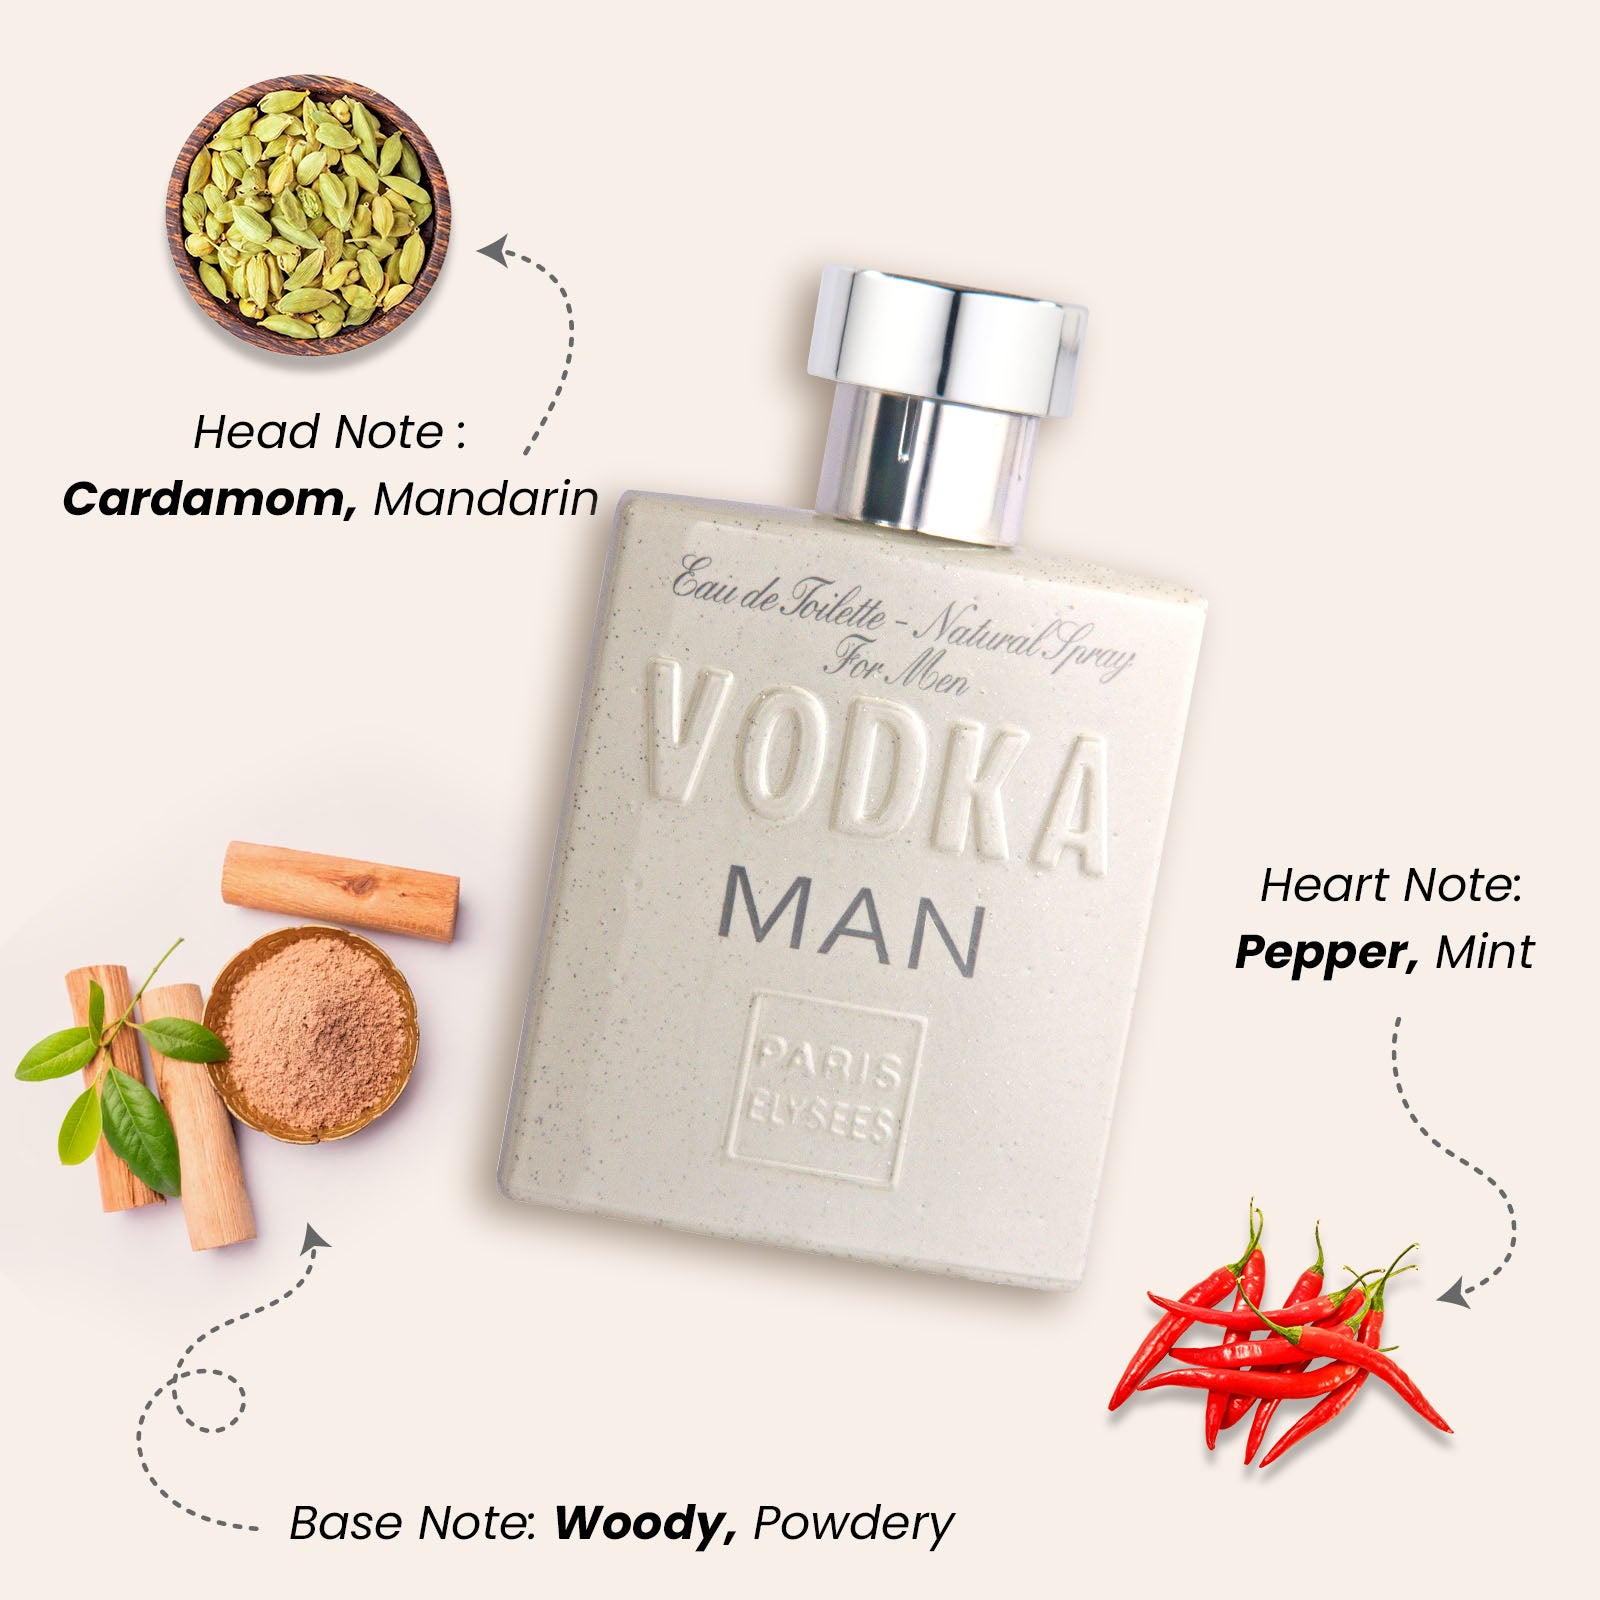 Vodka Man Perfume For Men 100 ml